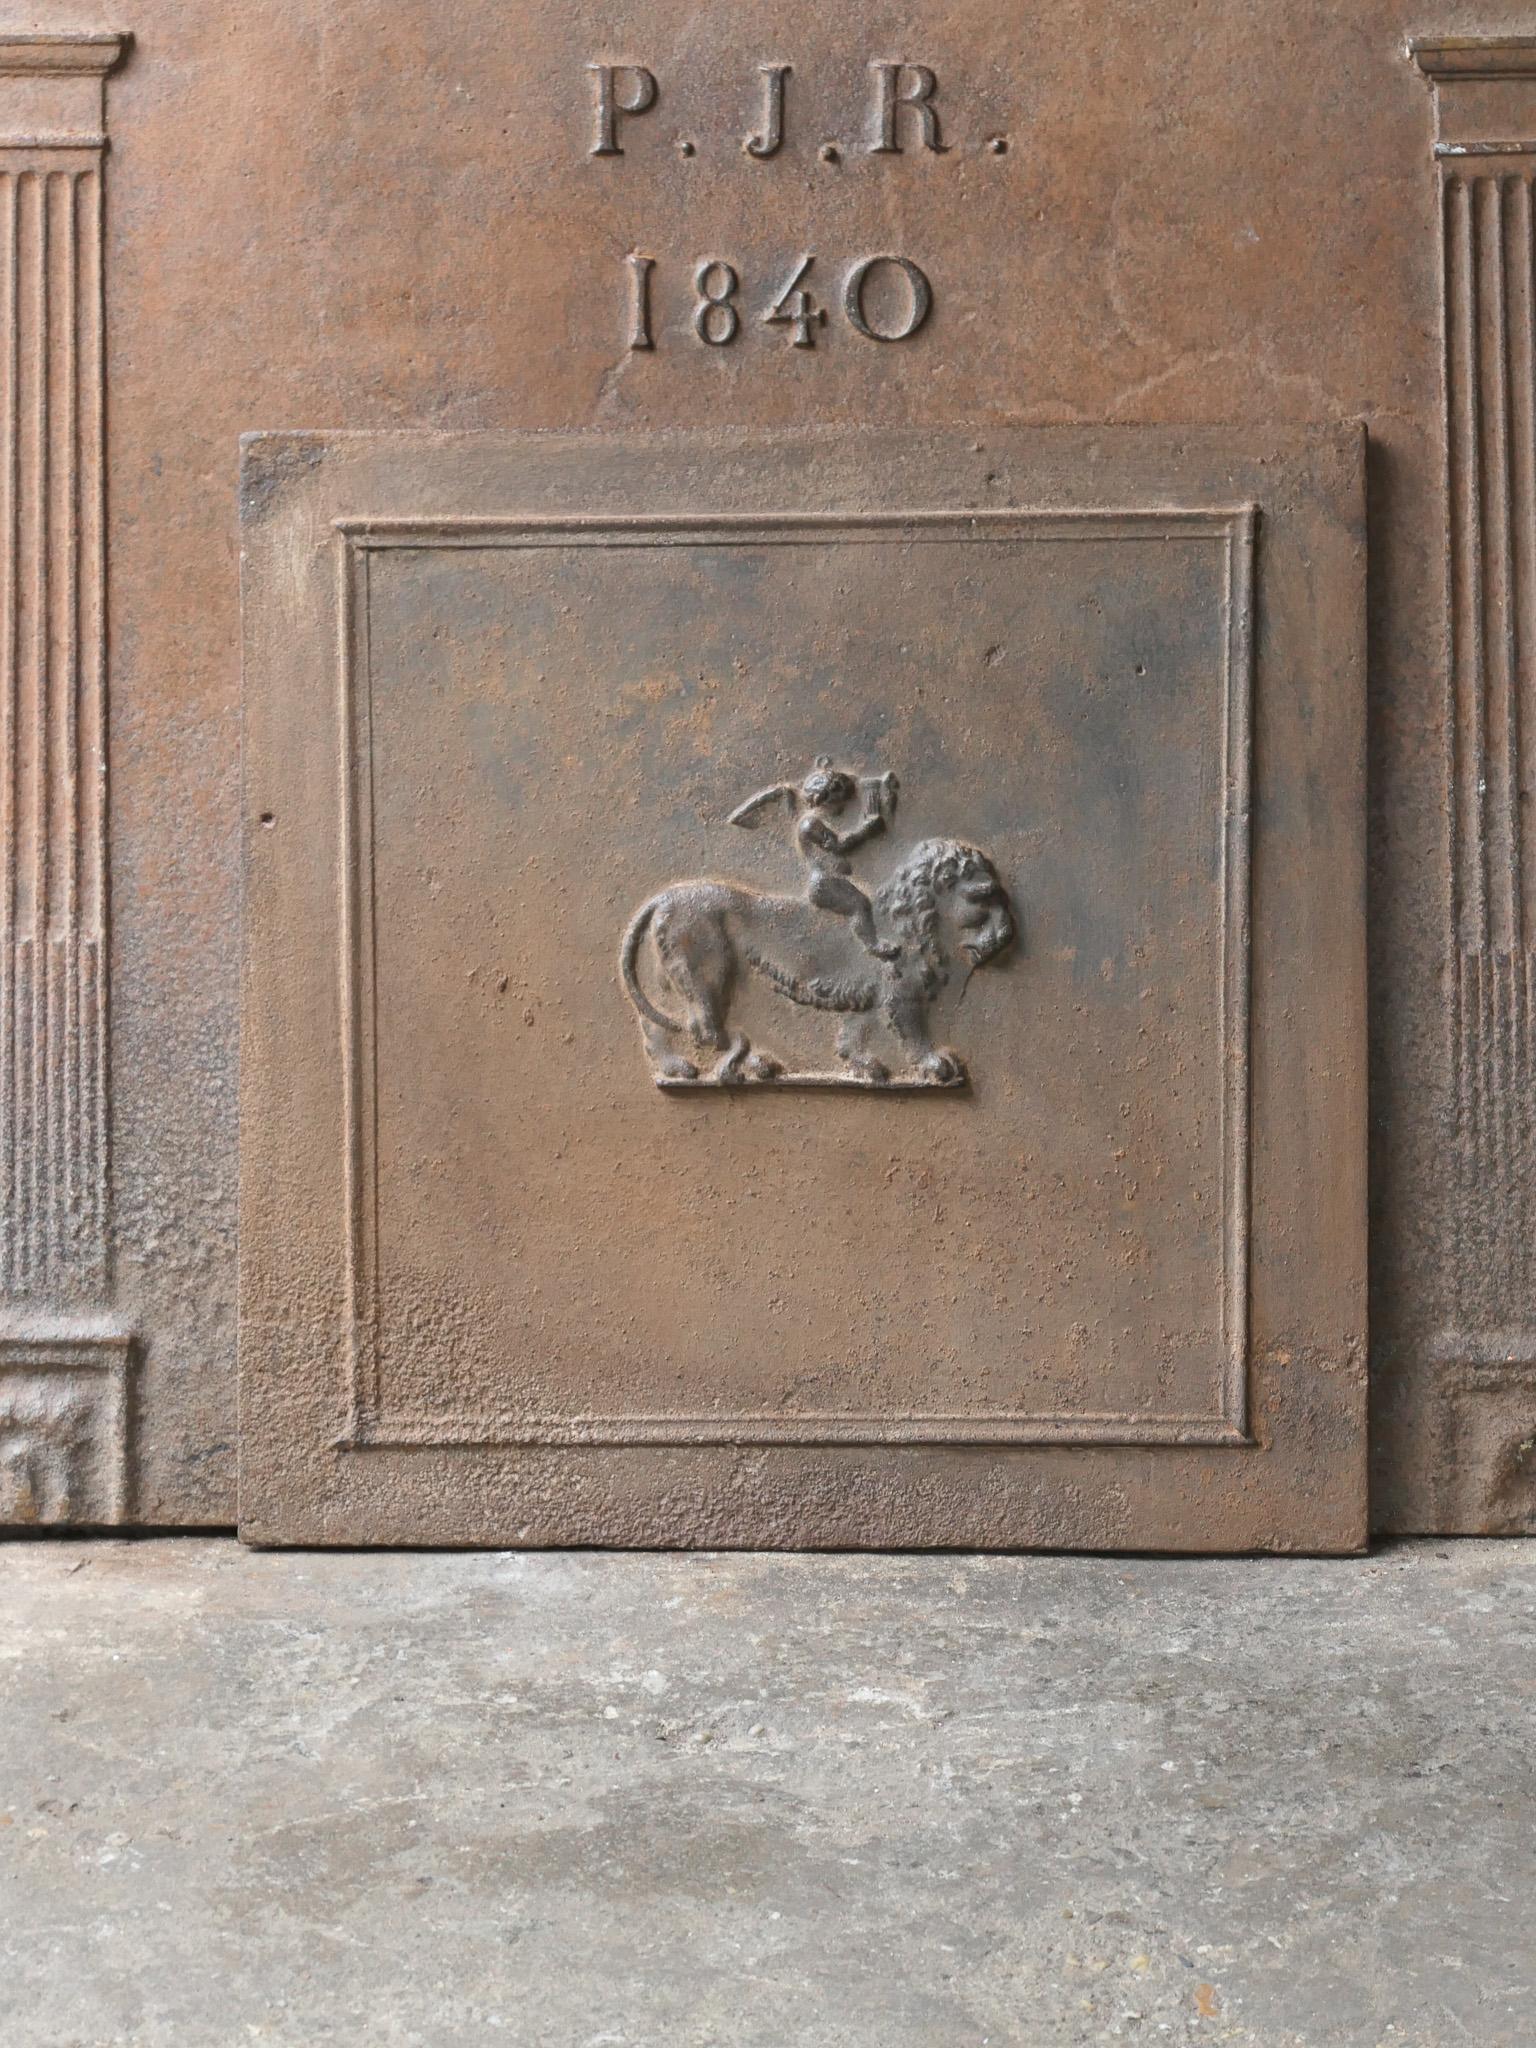 Plaque de cheminée française Napoléon III du 19e siècle avec un cupidon chevauchant un lion. La plaque de cheminée présente une patine naturelle brune. Sur demande, il peut être de couleur noire.

Nous disposons d'une collection unique et